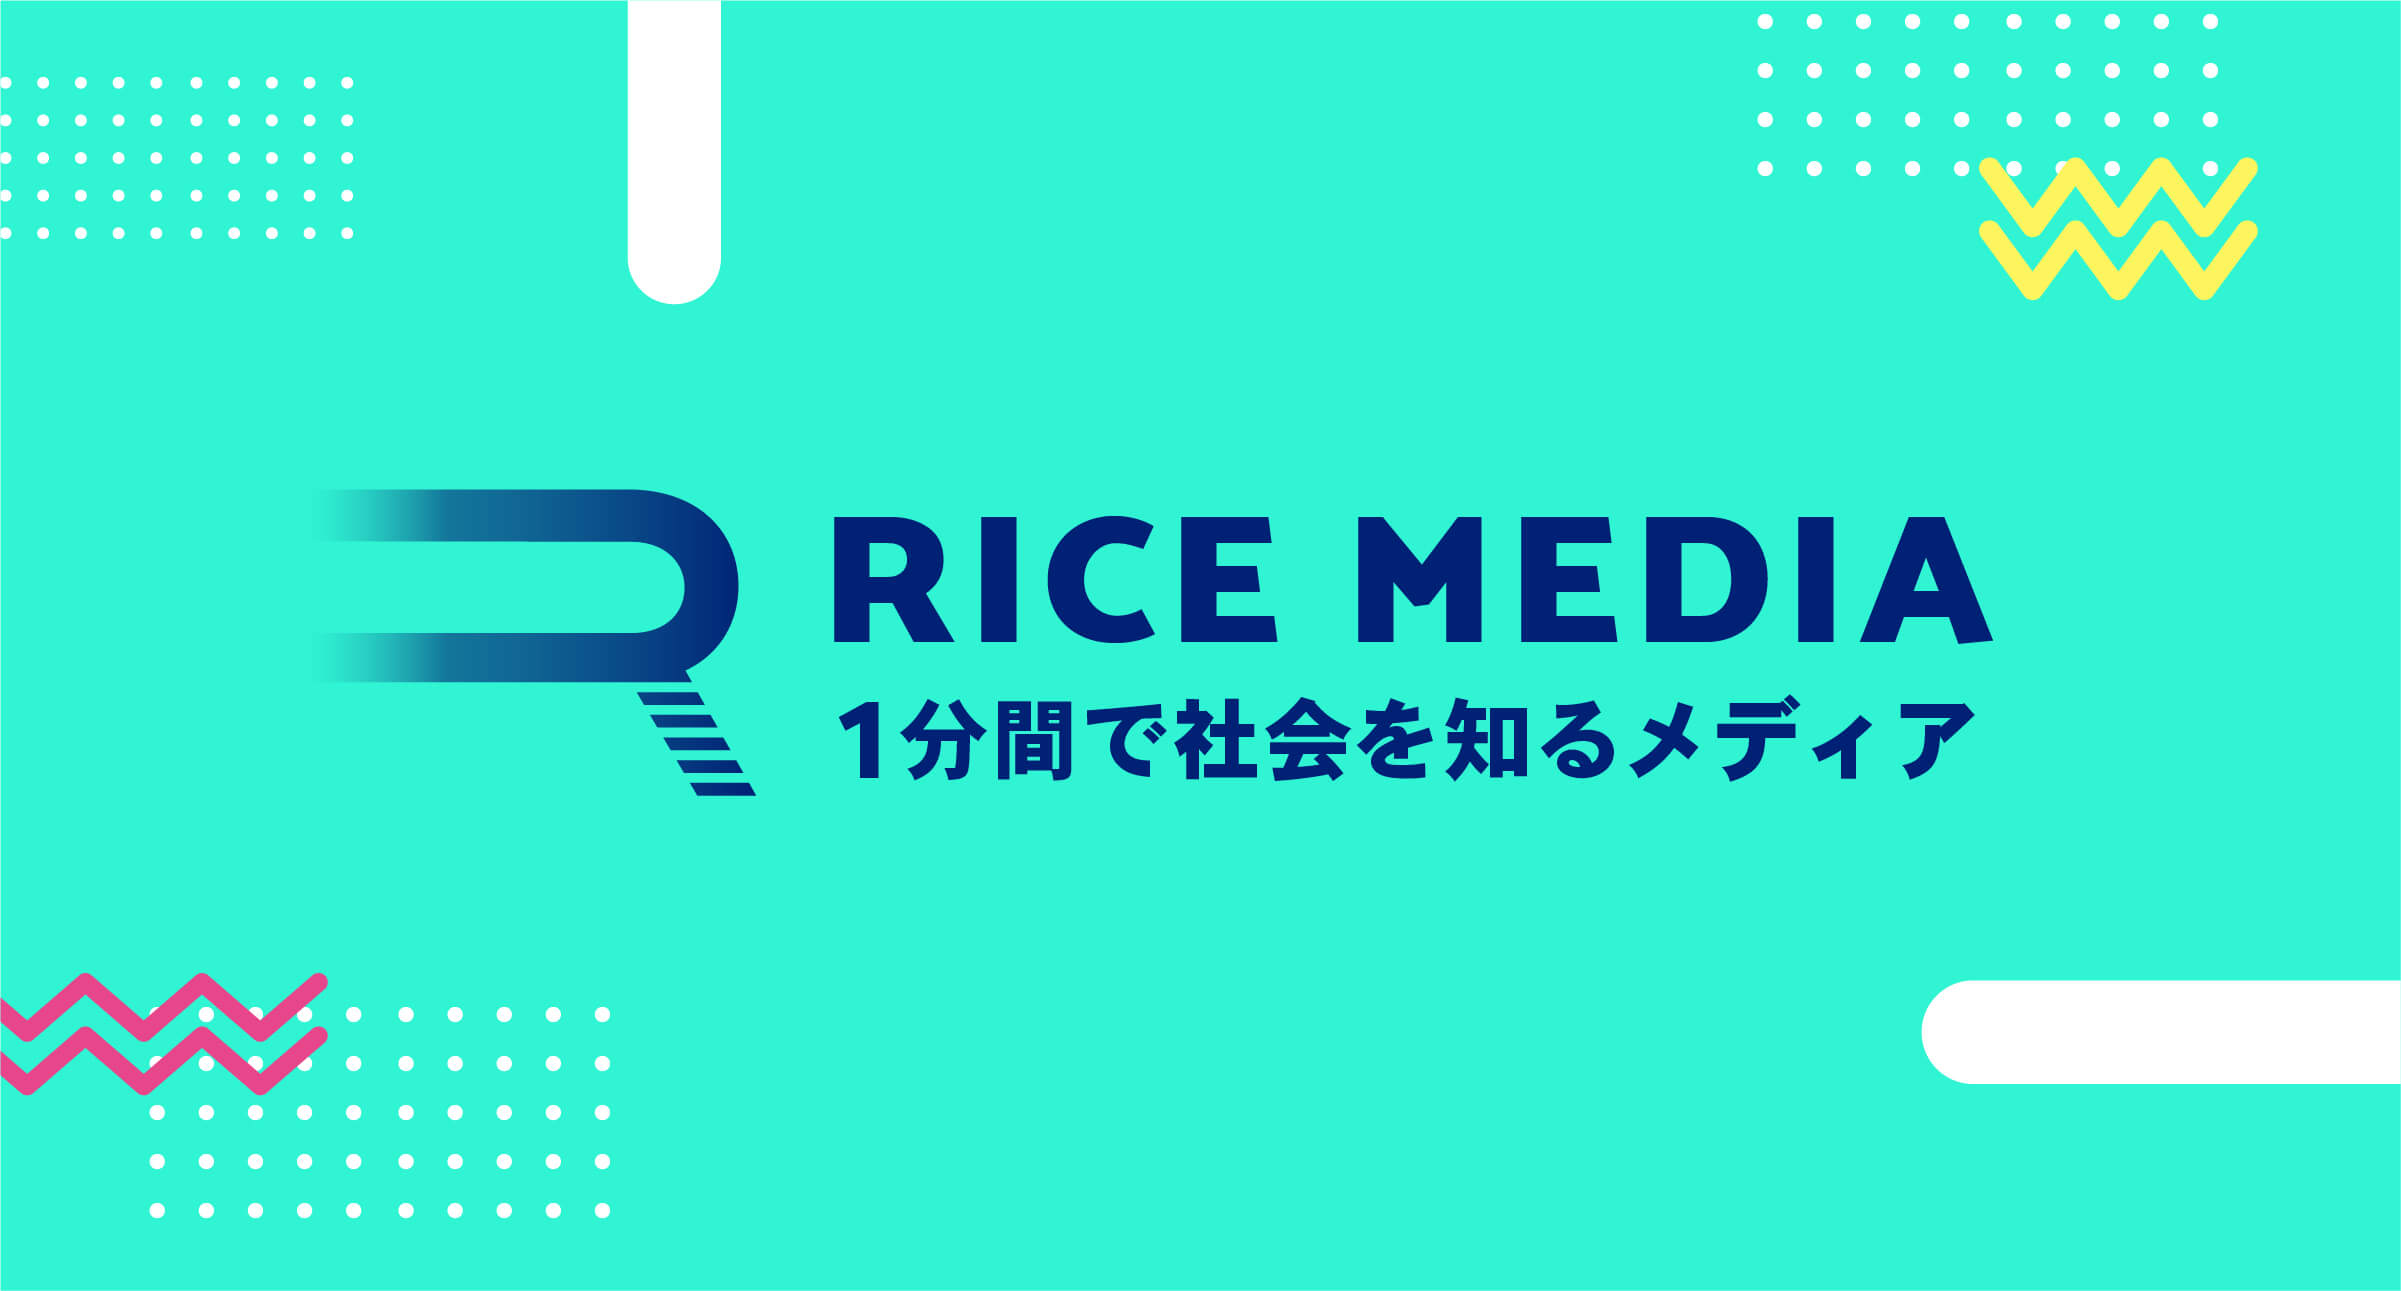 リツイートで植林できる 1分間で社会を知るsns動画メディア Rice Media を開始 株式会社ボーダレス ジャパンのプレスリリース